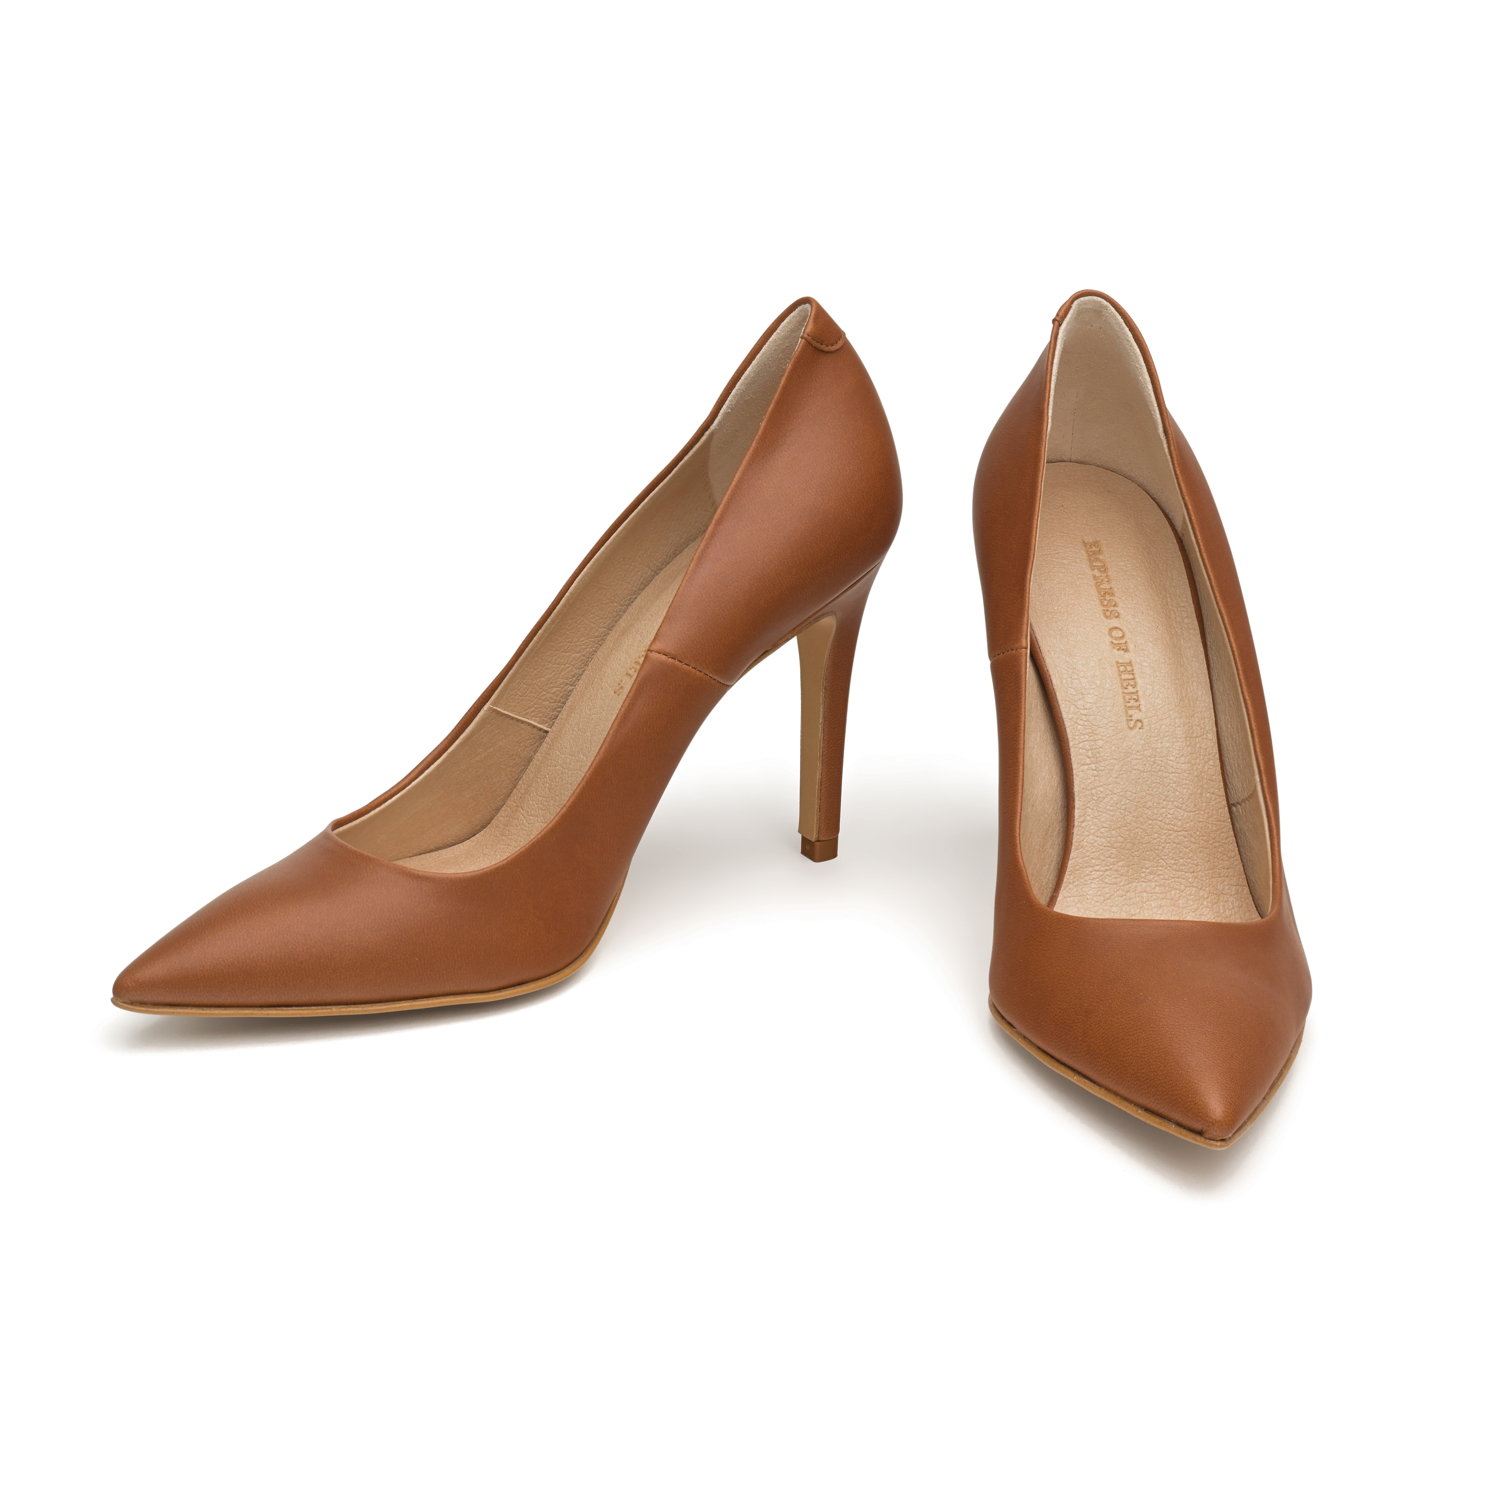 Leather pointed stiletto heels, brown, Lauren Ralph Lauren | La Redoute